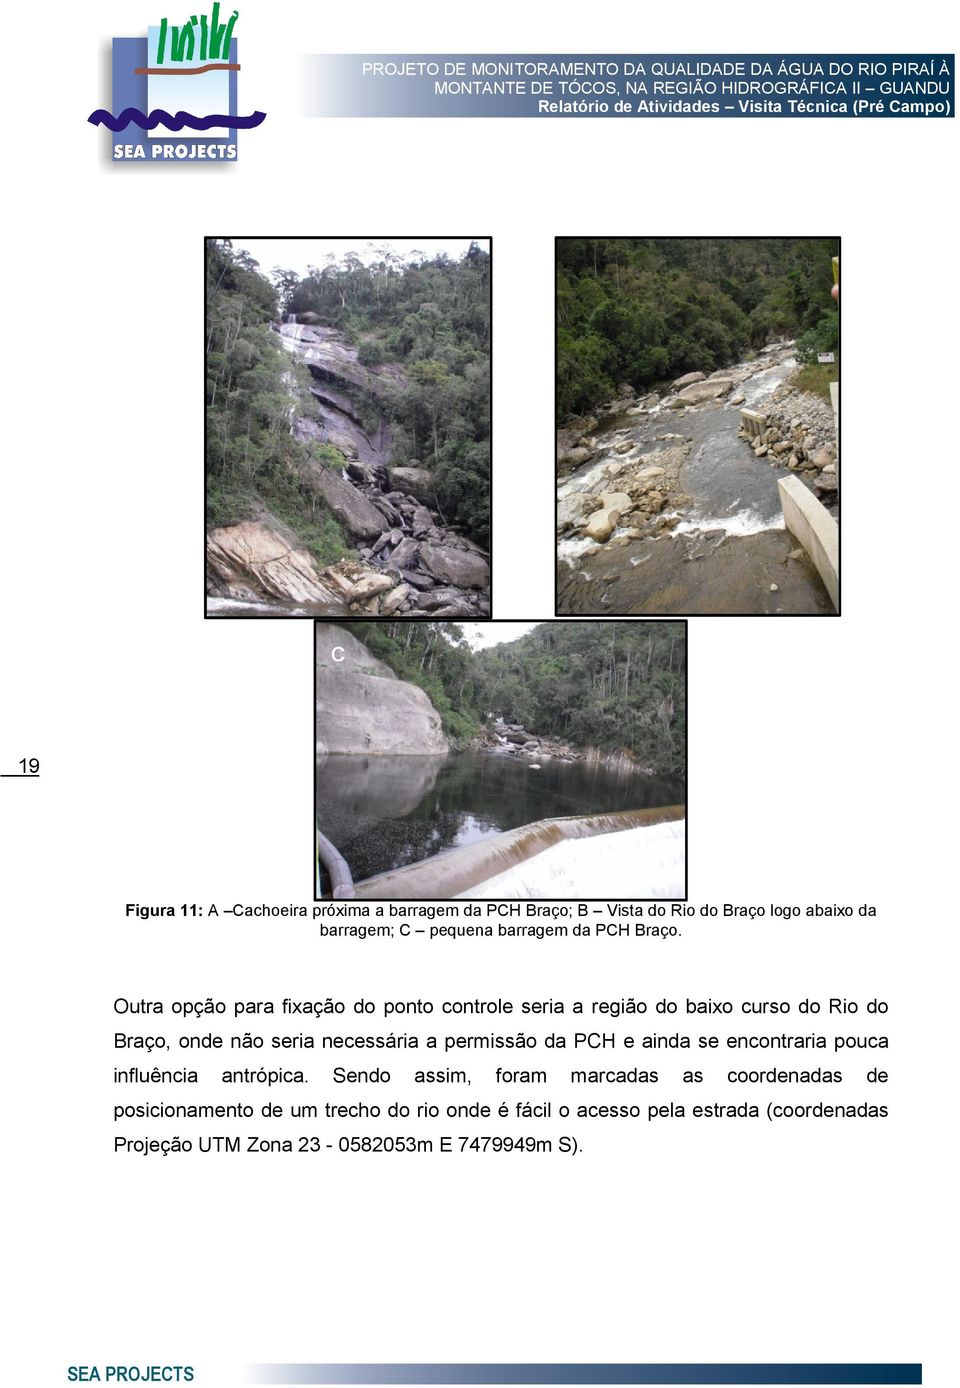 Outra opção para fixação do ponto controle seria a região do baixo curso do Rio do Braço, onde não seria necessária a permissão